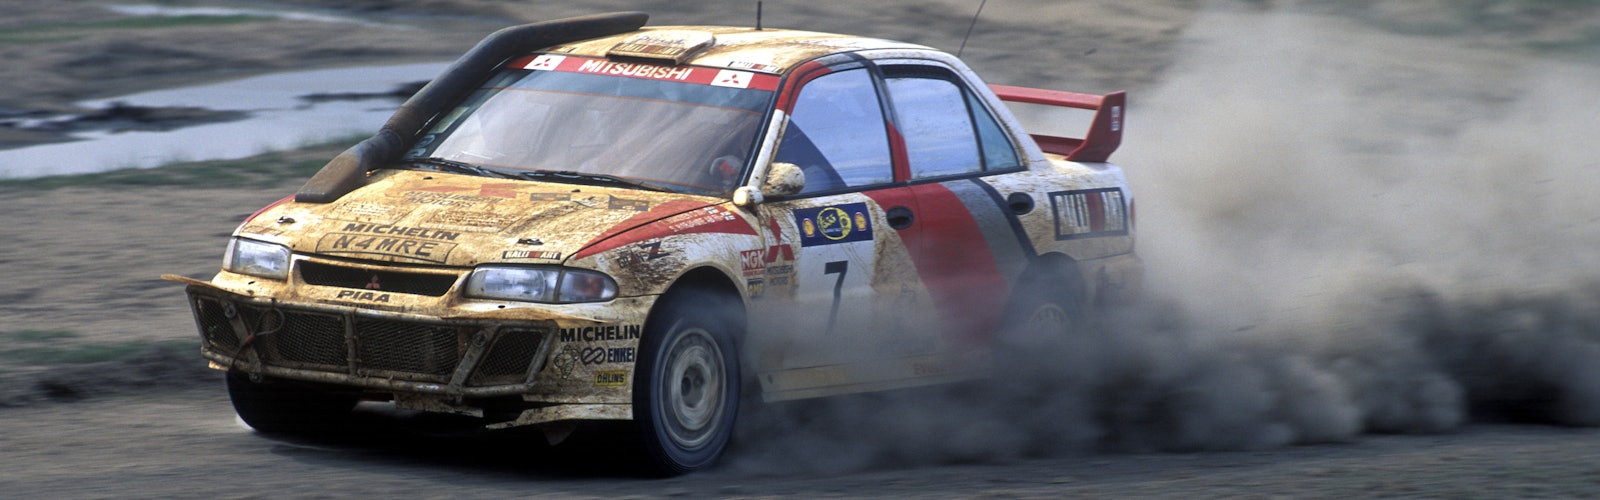 Tommi Makinen Mitsubishi WRC Safari Rally 1996